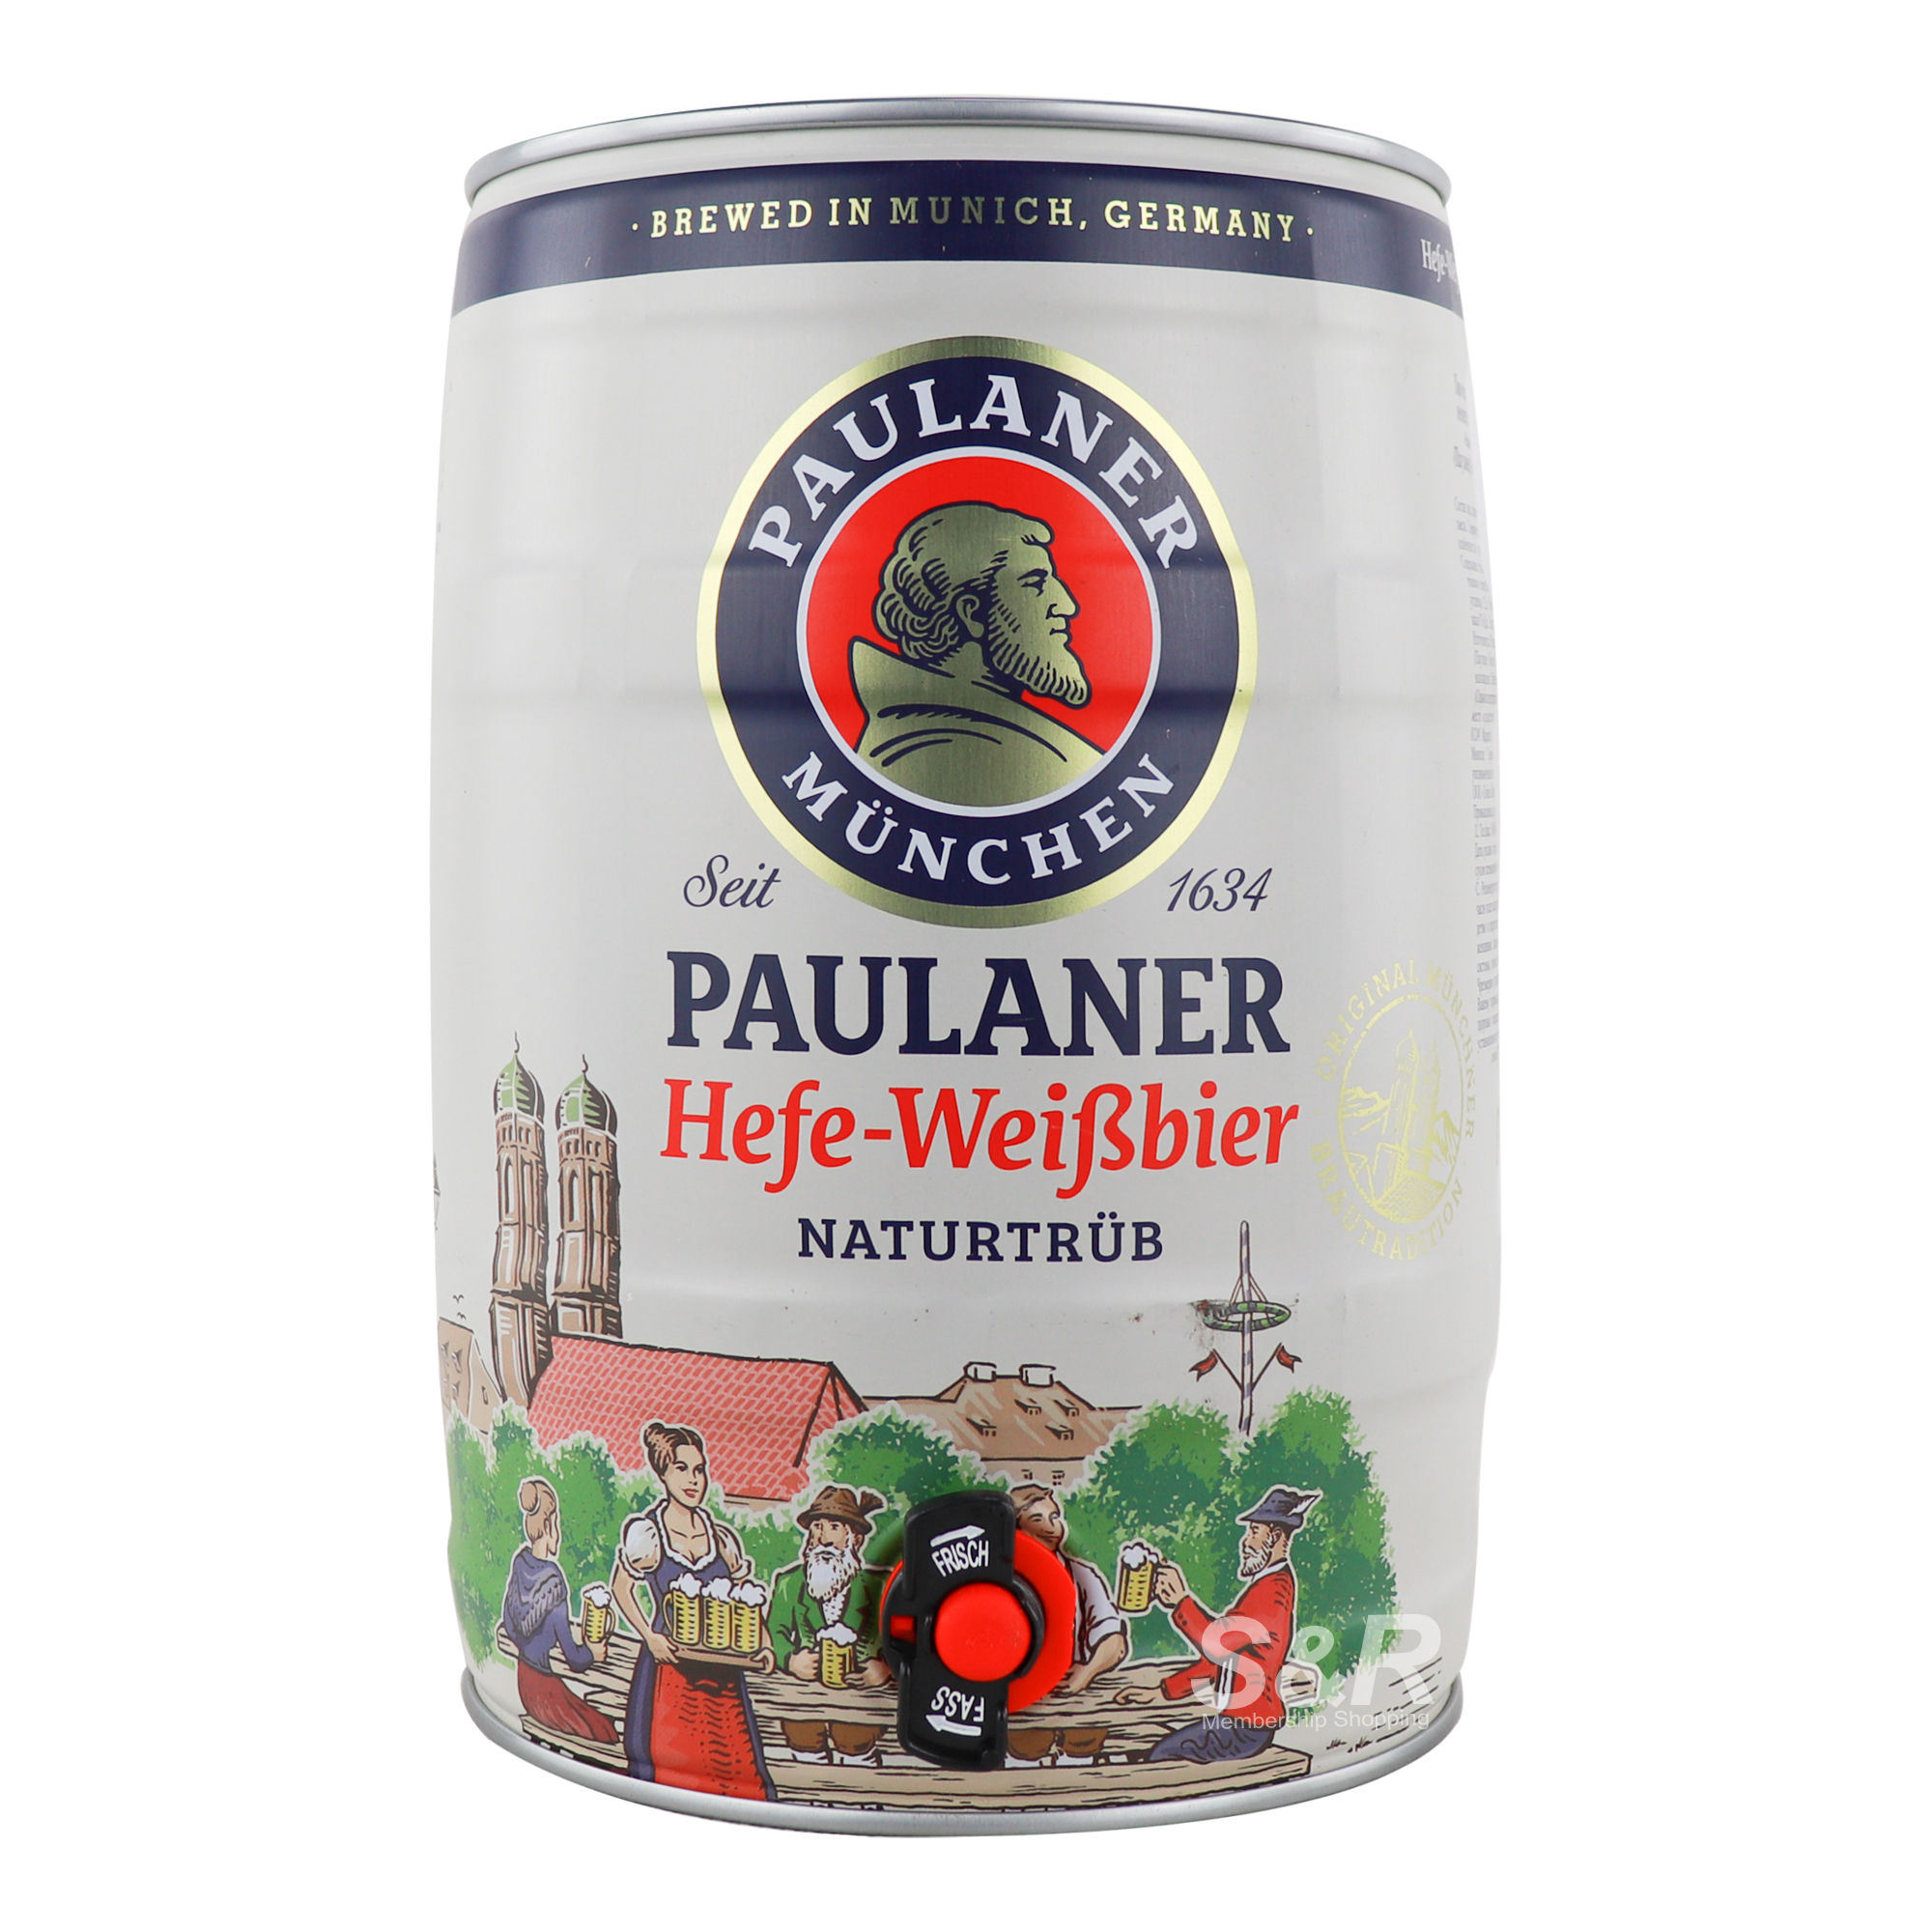 Paulaner Hefe-Weizen Munich Wheat Beer 5L